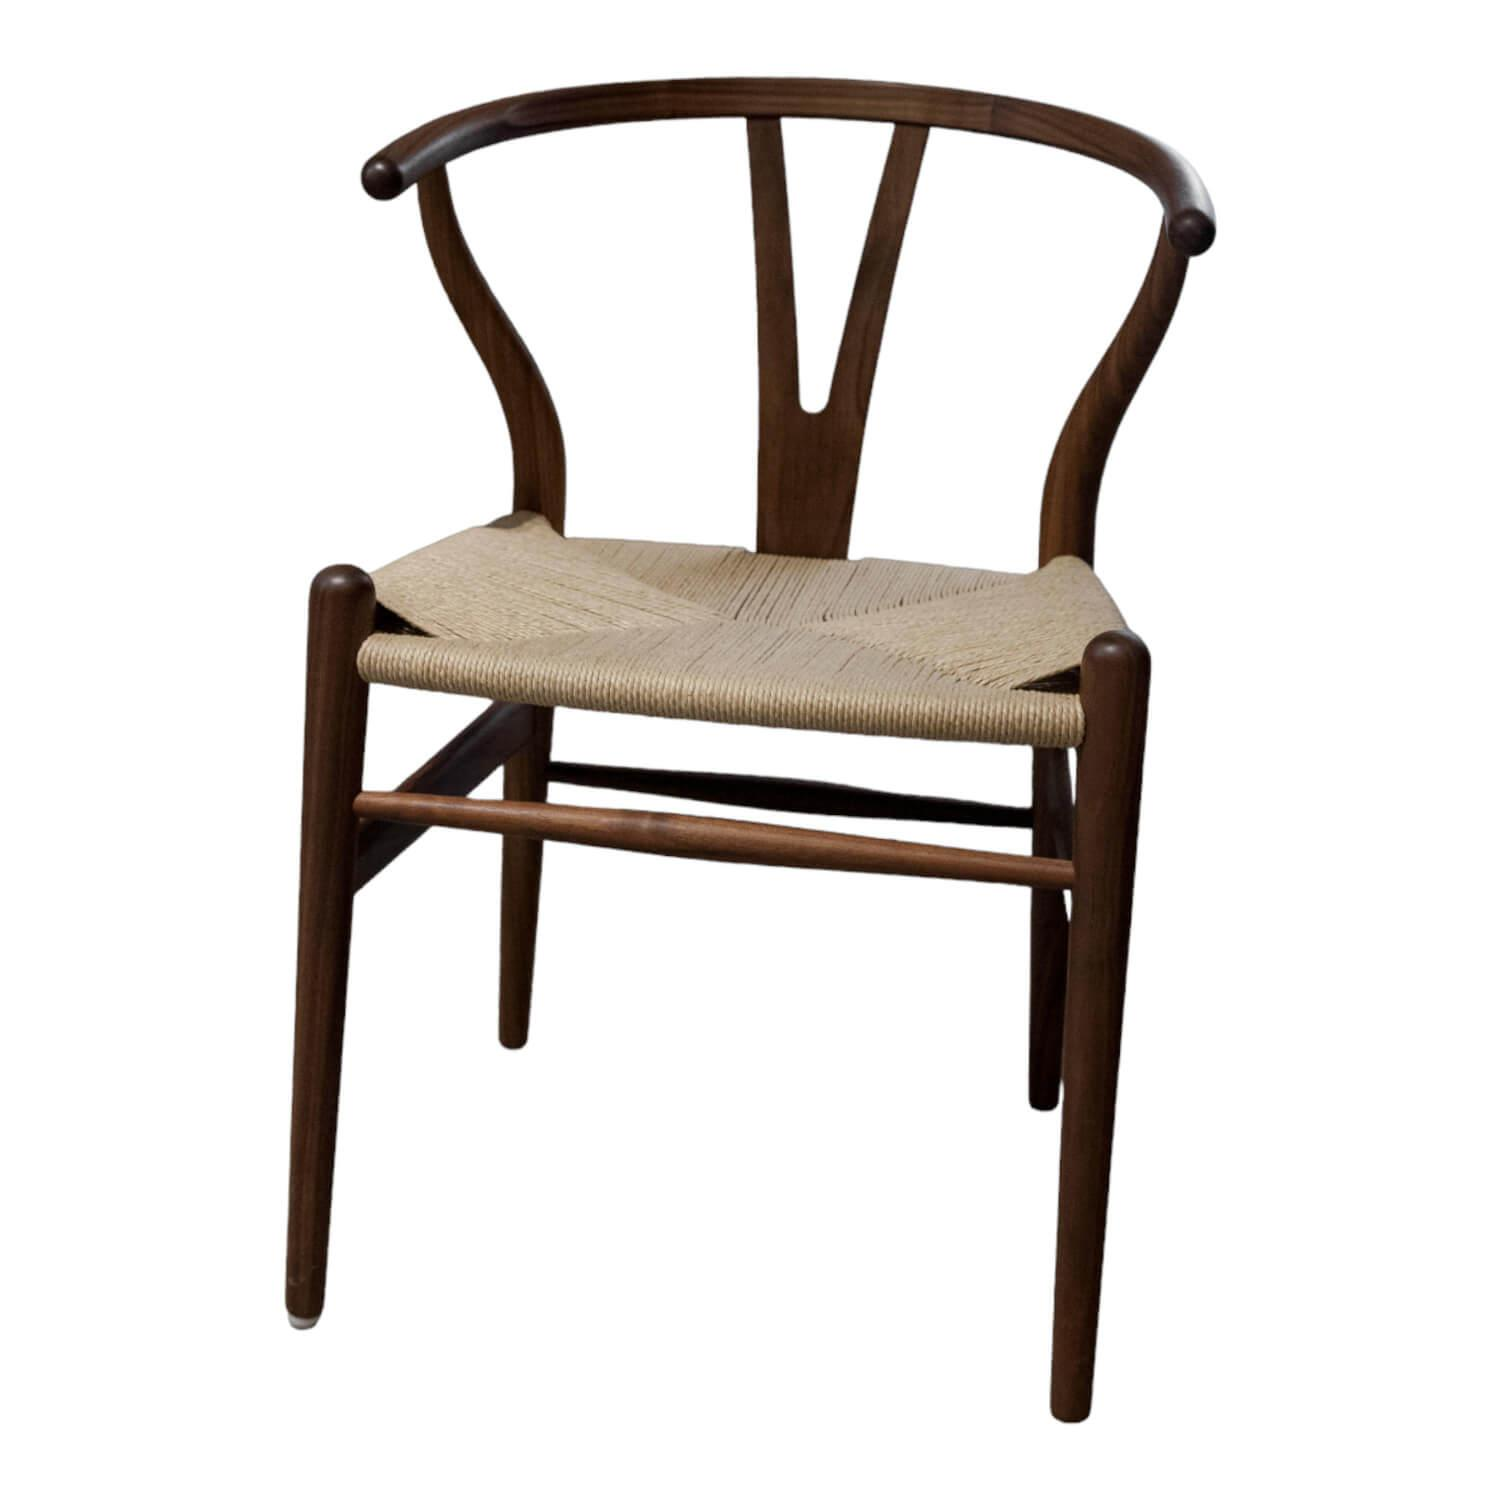 4-er Set Stuhl CH24 Wishbone Chair Sitzfläche Papierkordel Natur Gestell Nussbaum